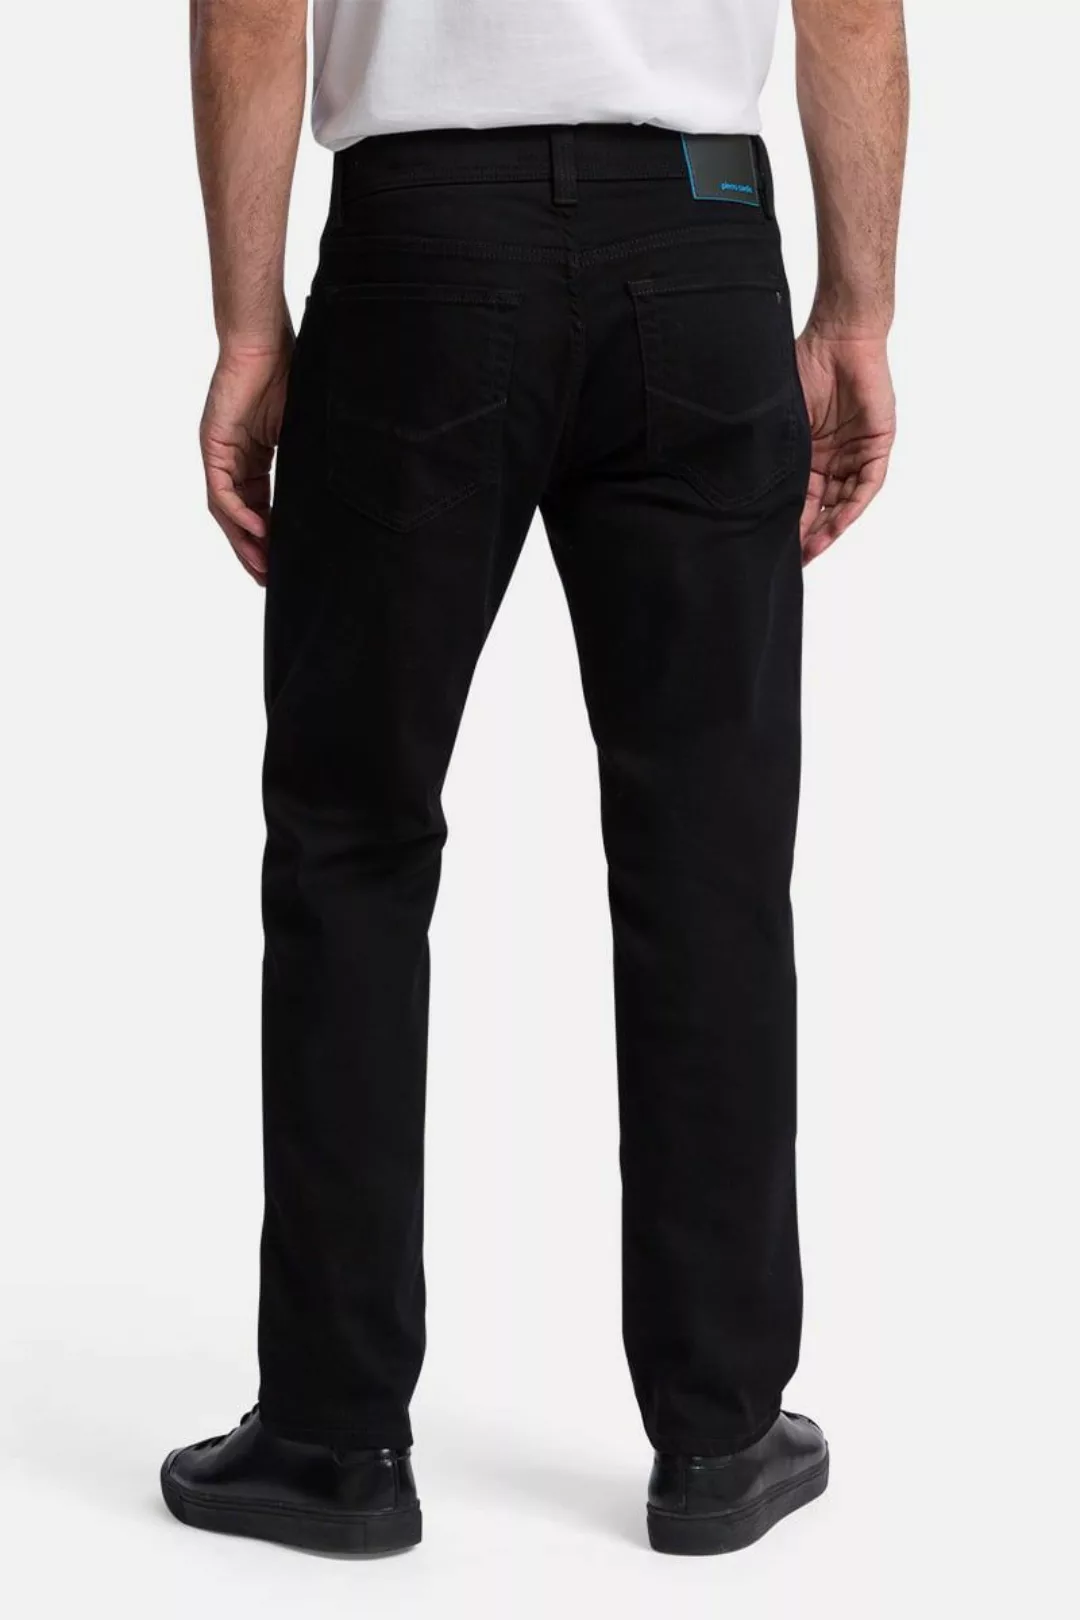 Pierre Cardin Trousers Lyon Tapered Future Flex Schwarz - Größe W 40 - L 30 günstig online kaufen